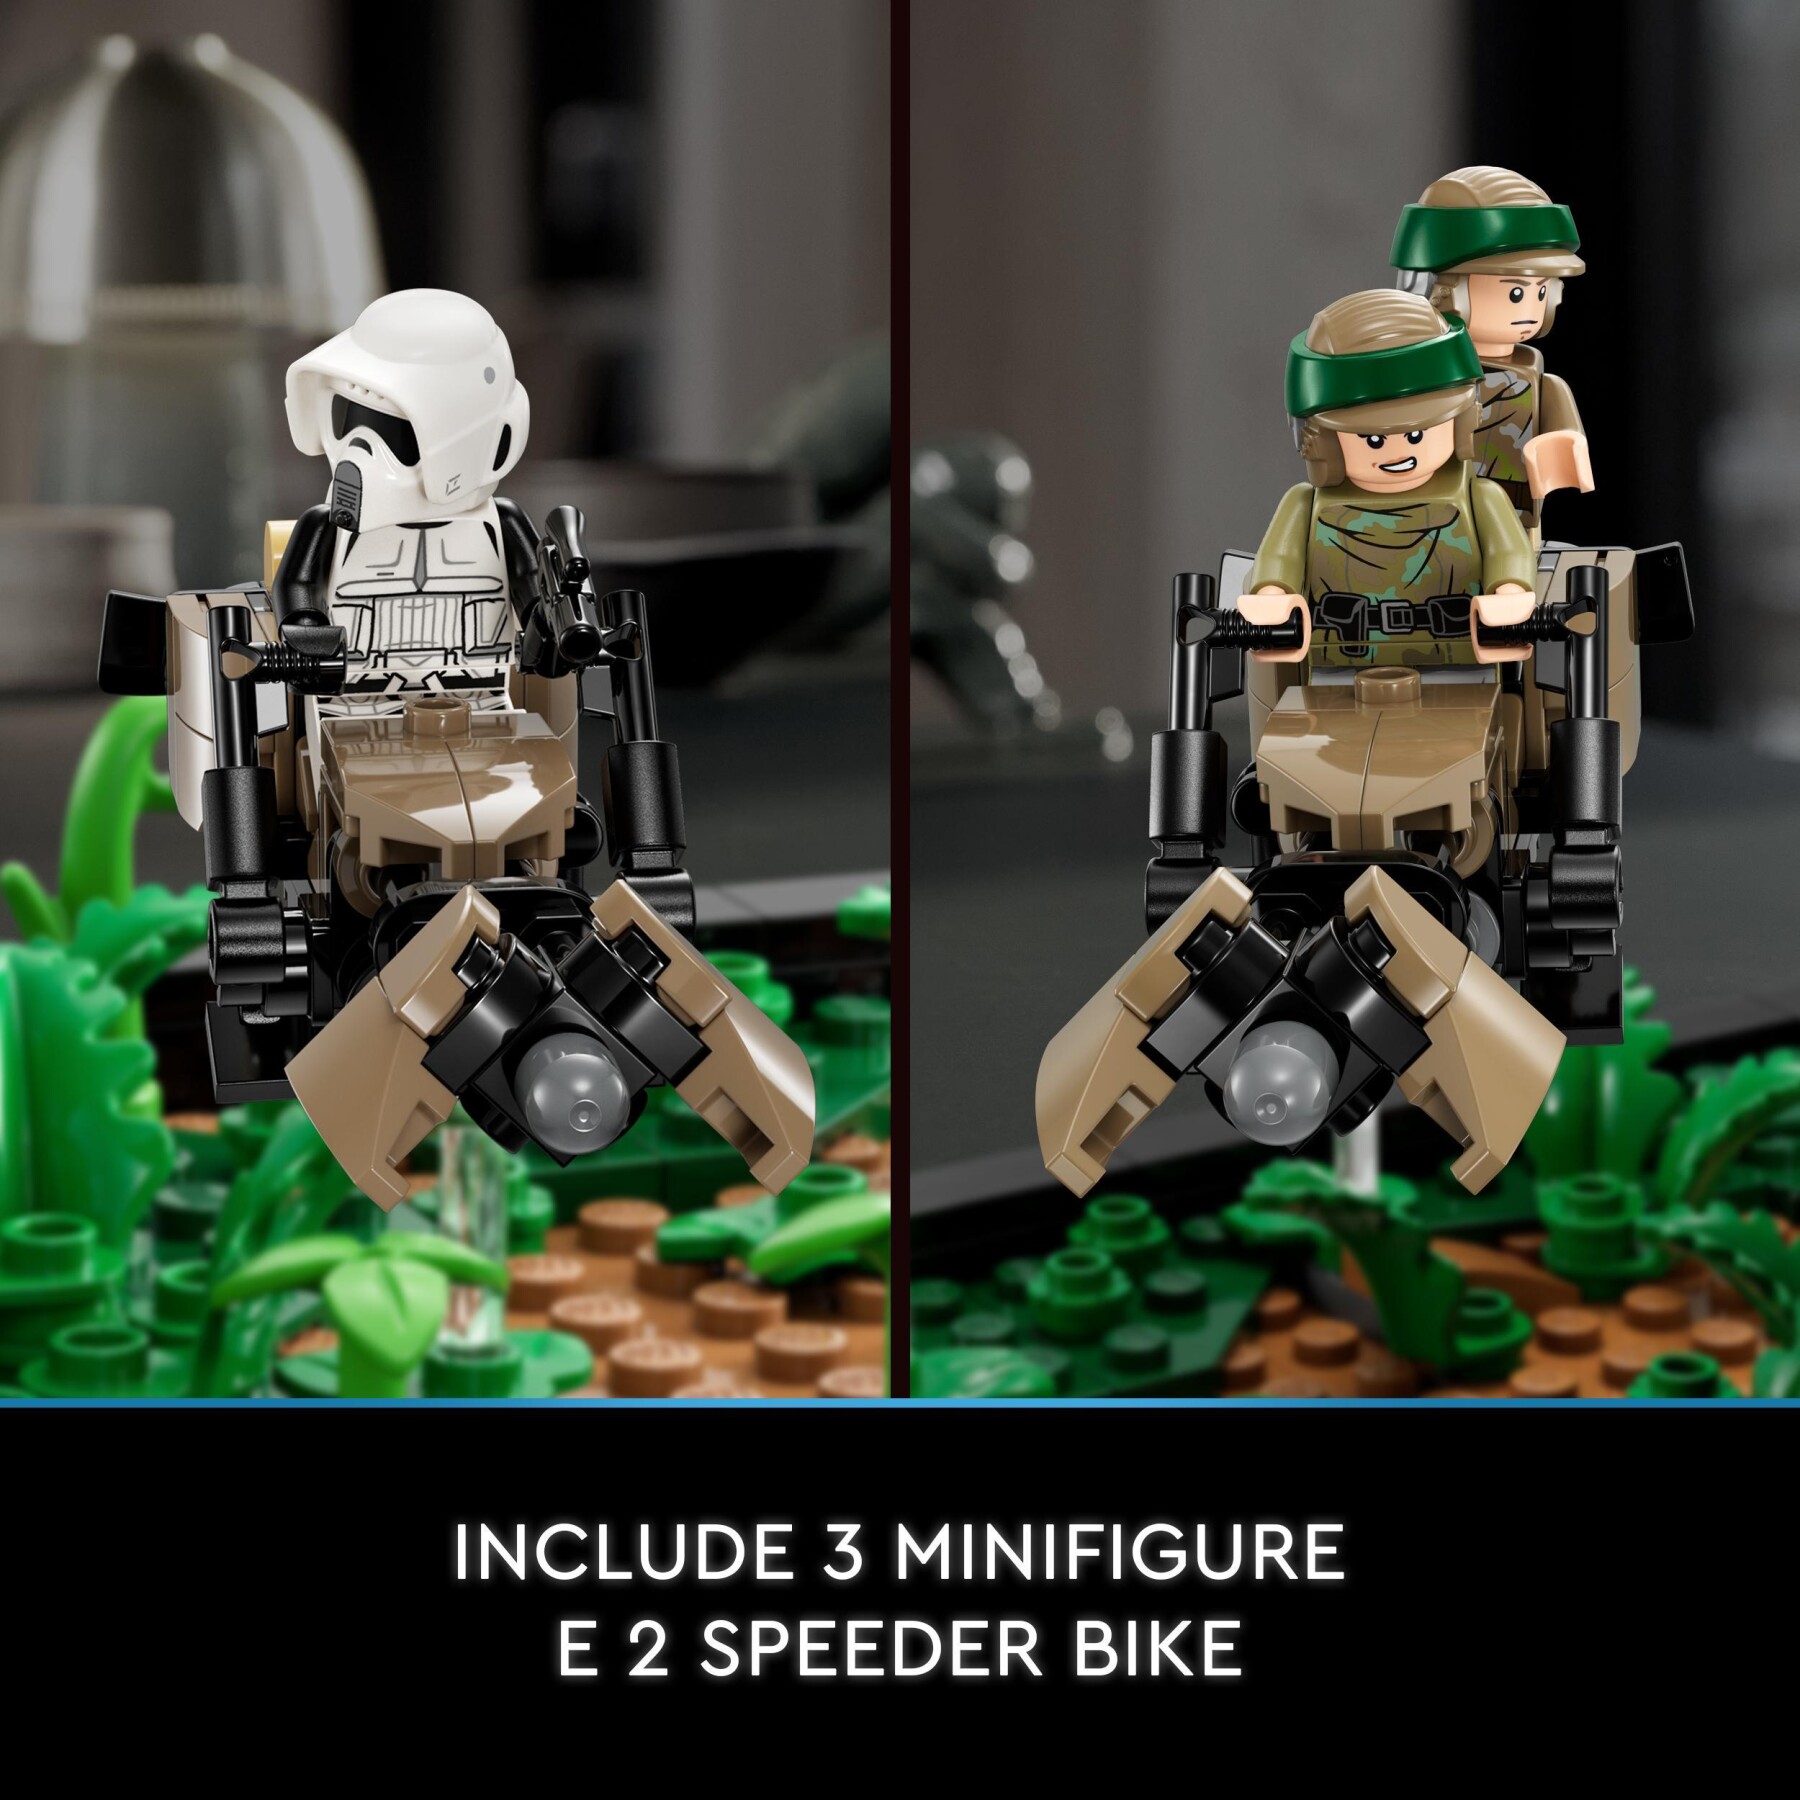 Lego star wars 75353 diorama inseguimento con lo speeder su endor con luke skywalker e principessa leia, il ritorno dello jedi - LEGO® Star Wars™, Star Wars